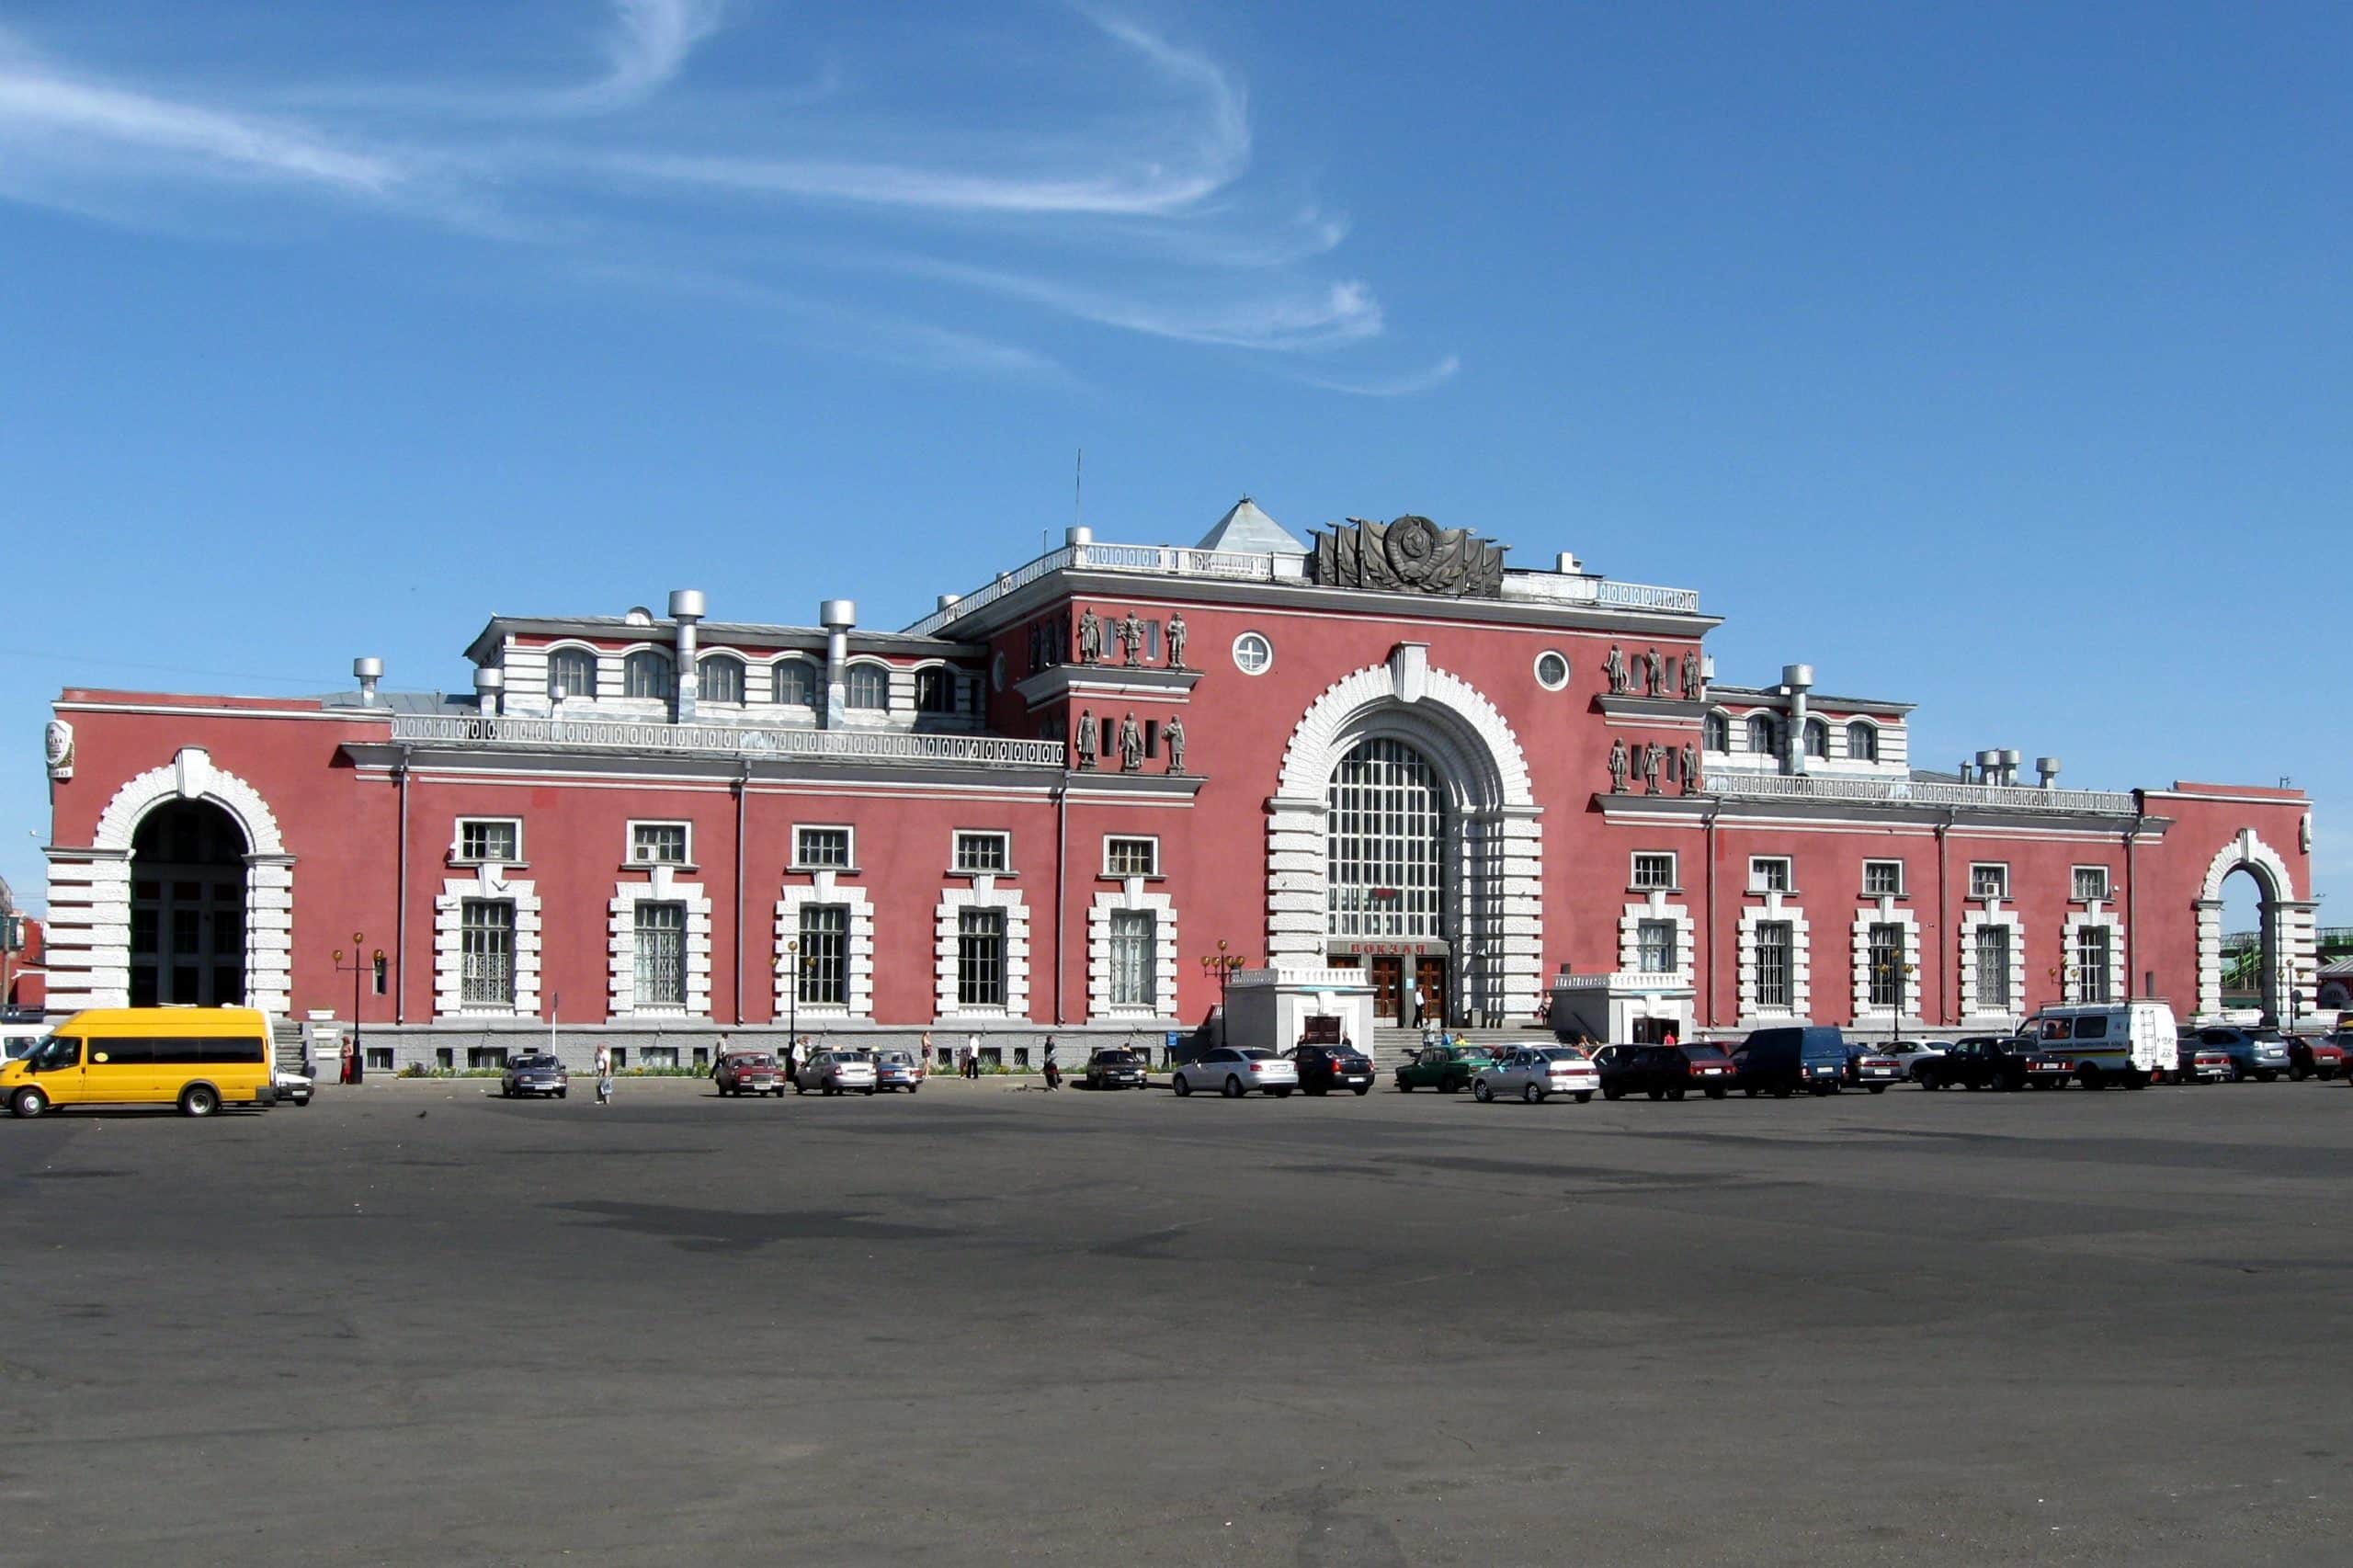 ยูเครนโจมตีสถานีรถไฟที่ครูสก์